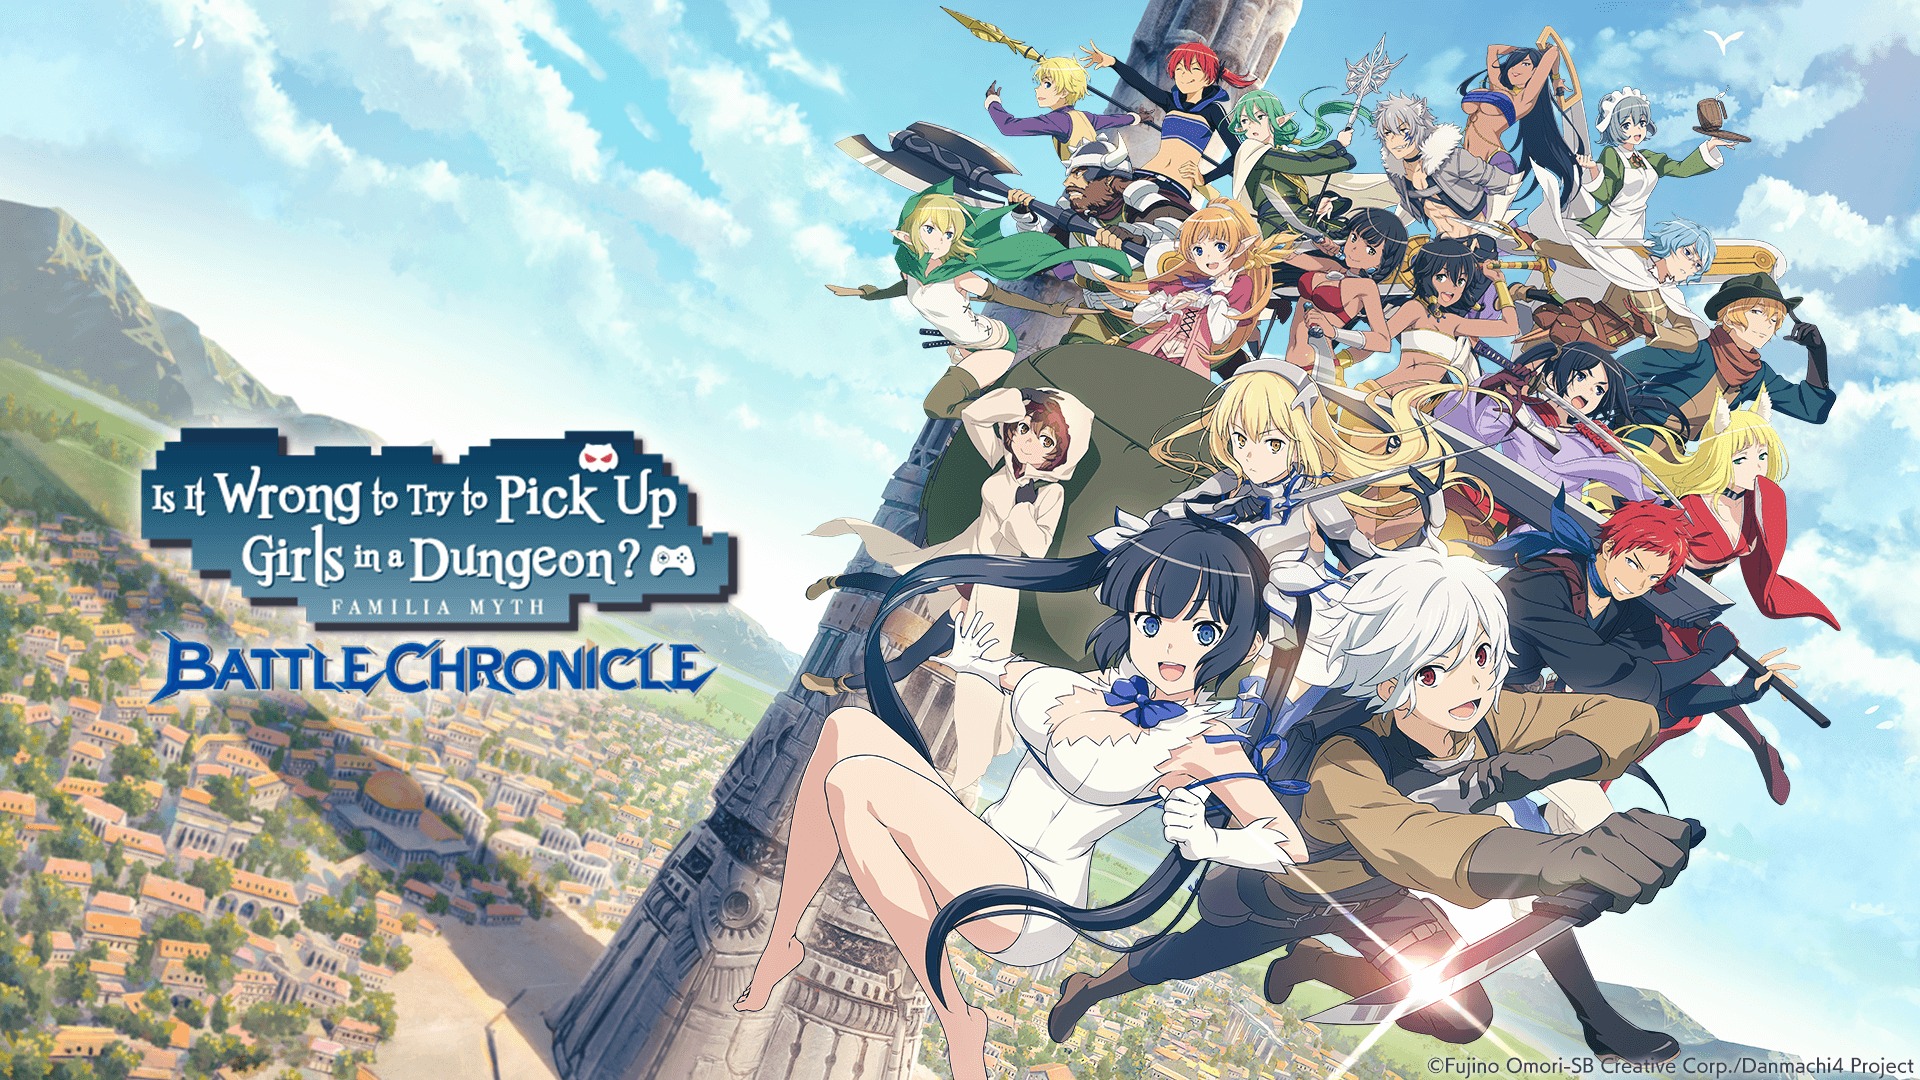 DanMachi Battle Chronicle - Game Nhập Vai Chuyển Thể Từ Anime Chính Thức Phát Hành Toàn Cầu